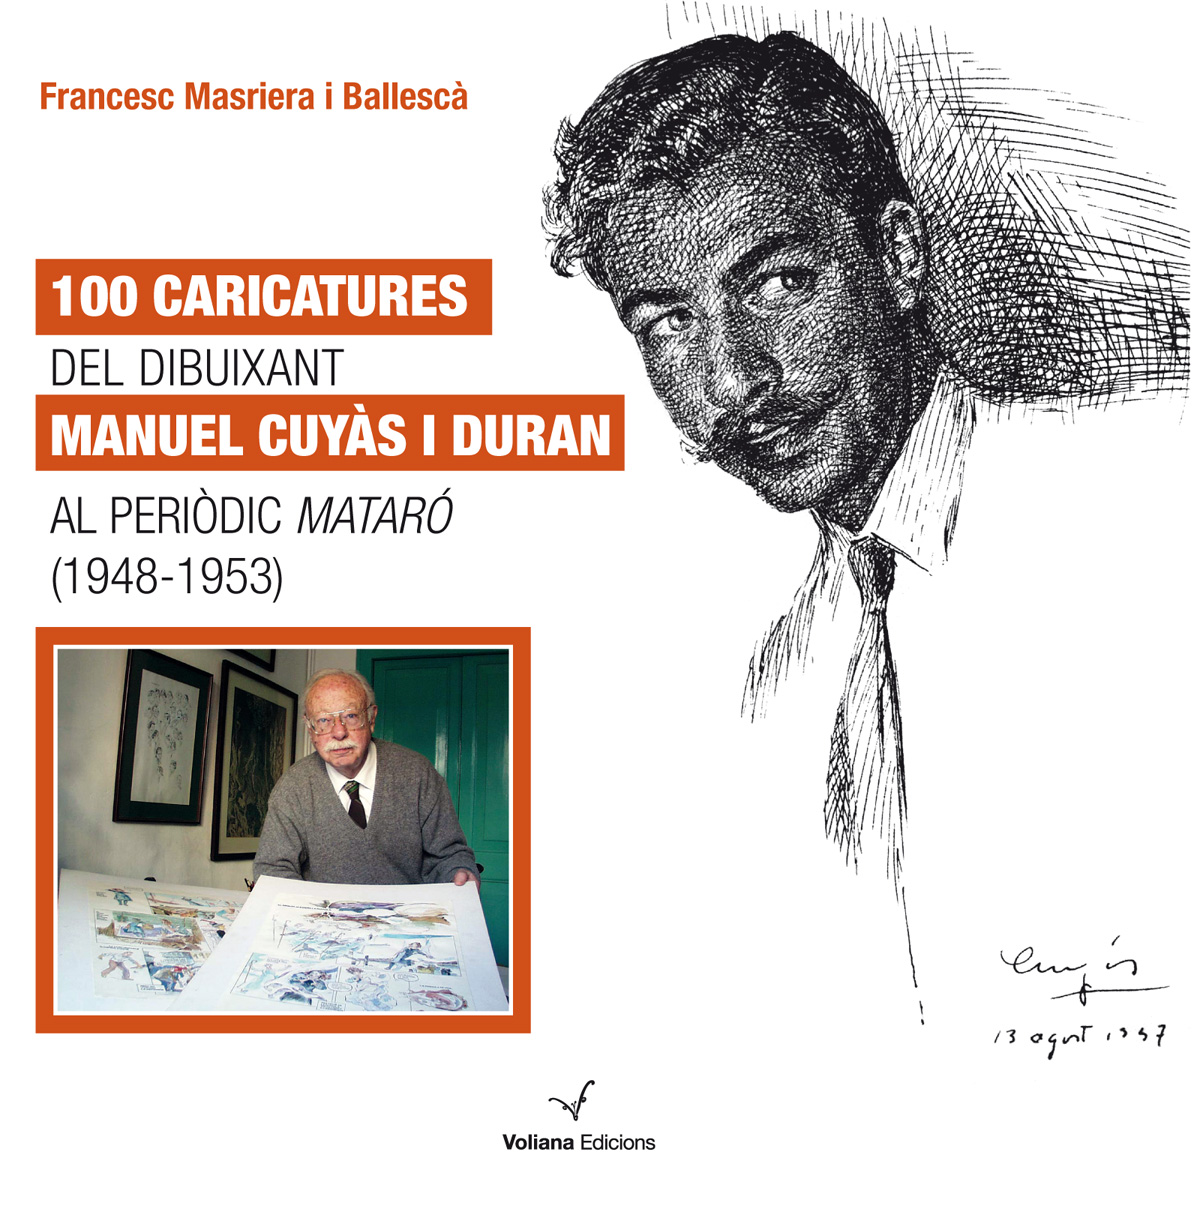 100 caricatures del dibuixant Manuel Cuyàs i Duran